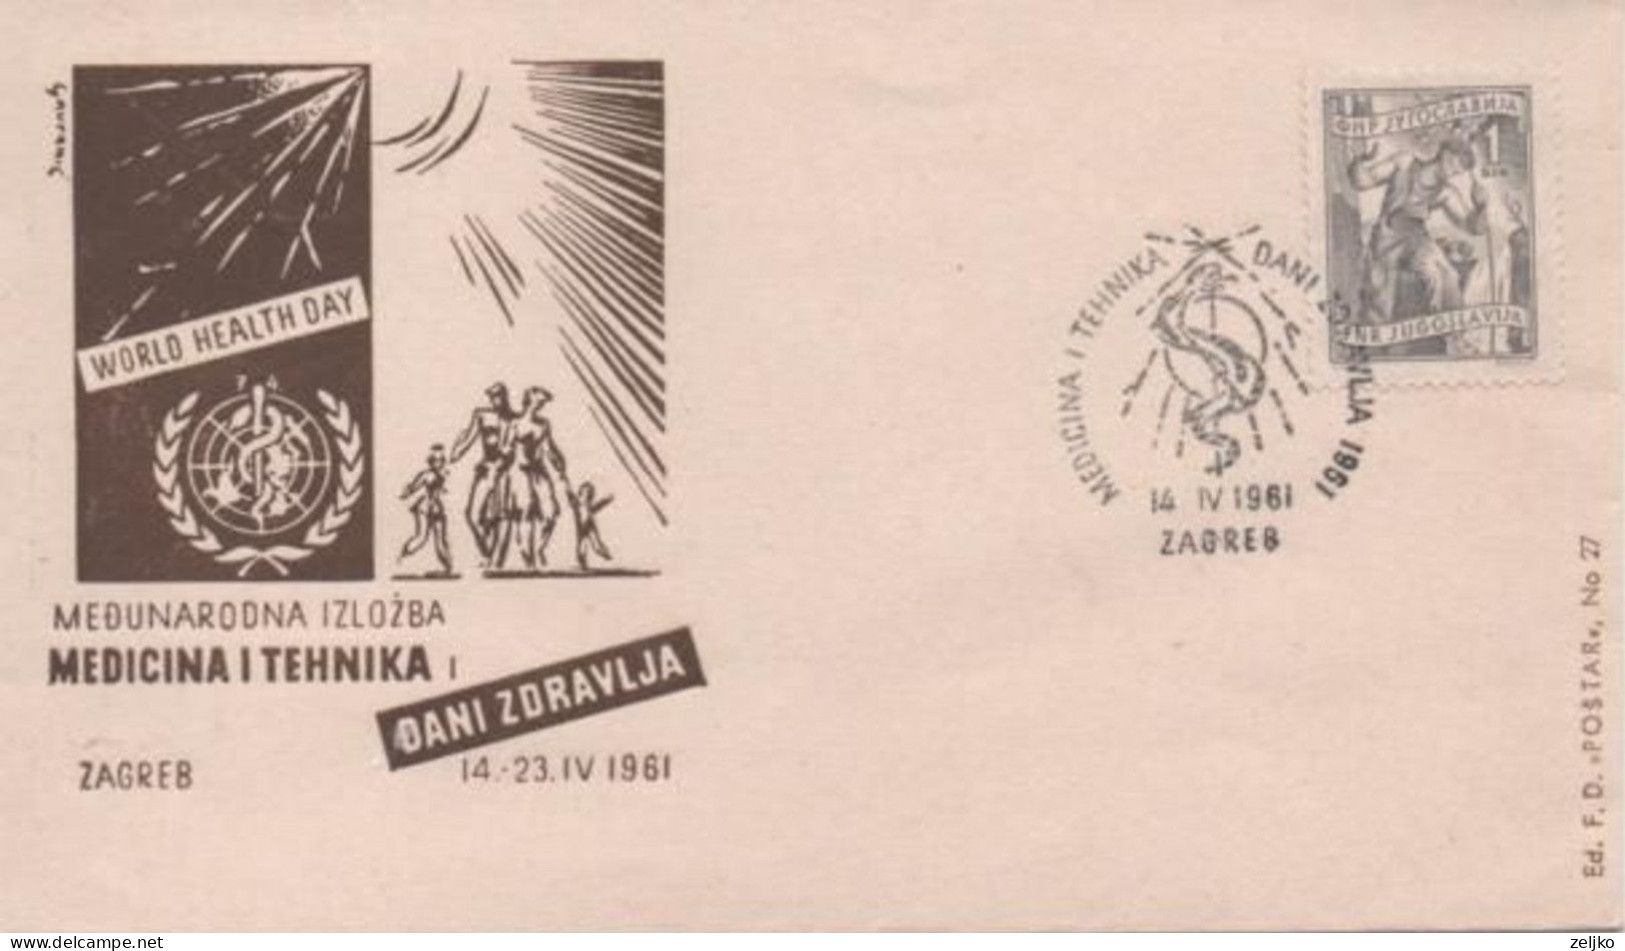 Yugoslavia, International Exhibition Medicine And Technique, Zagreb 1961, World Health Day - Medicina